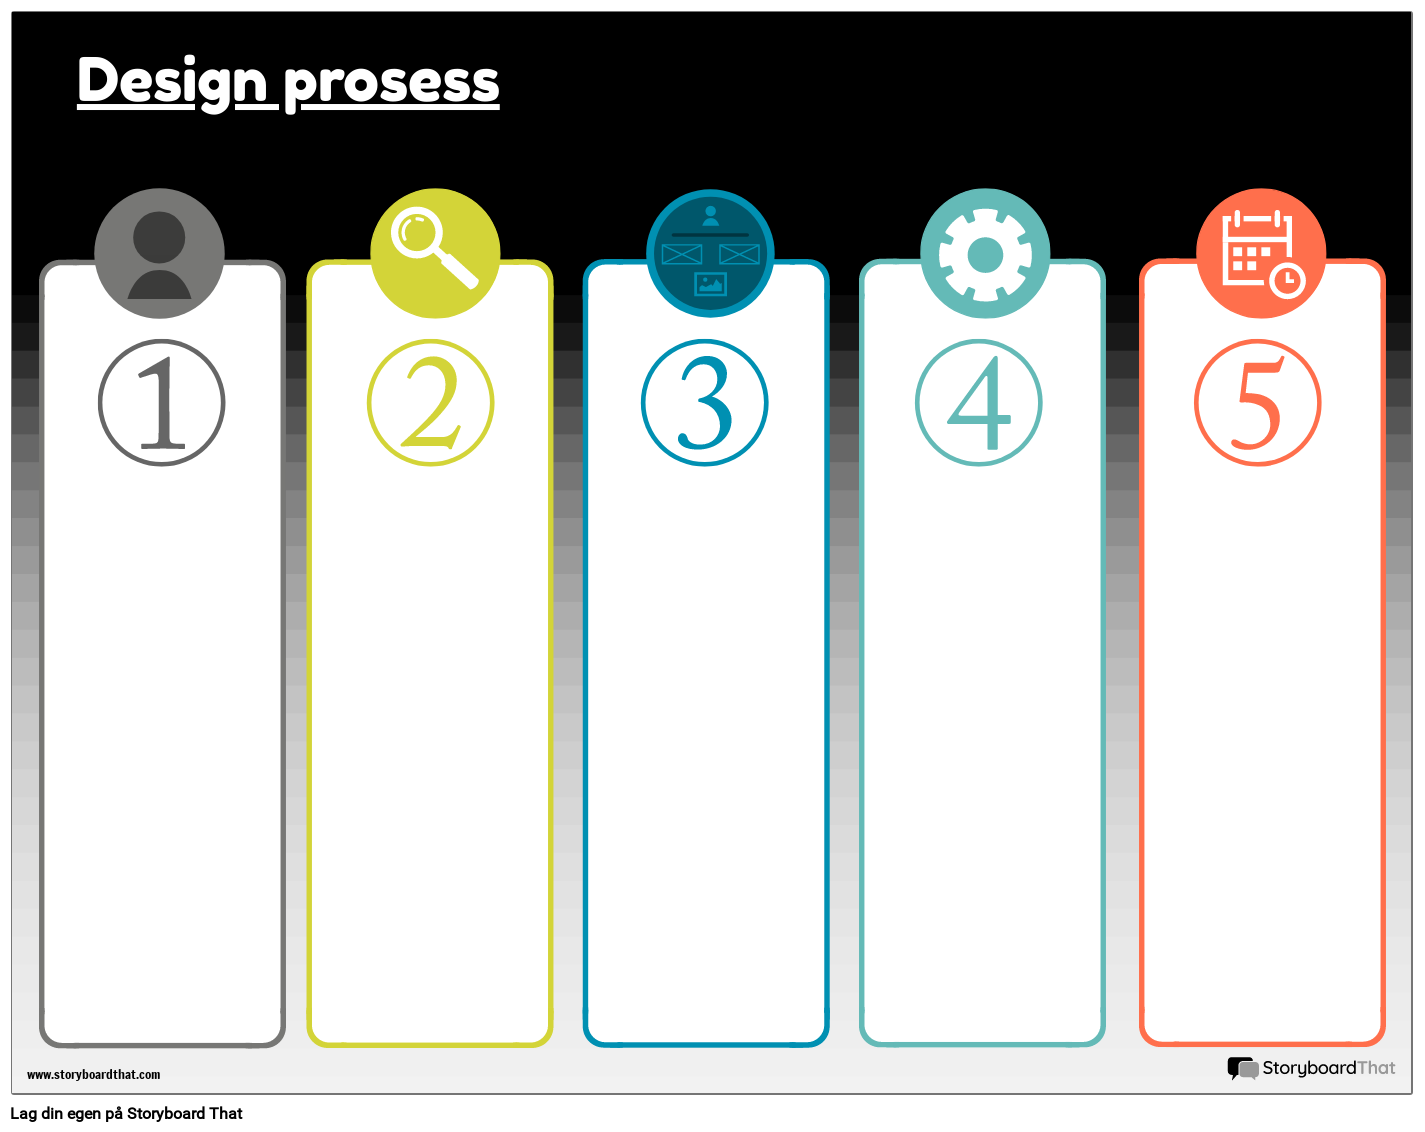 Designprosess 1